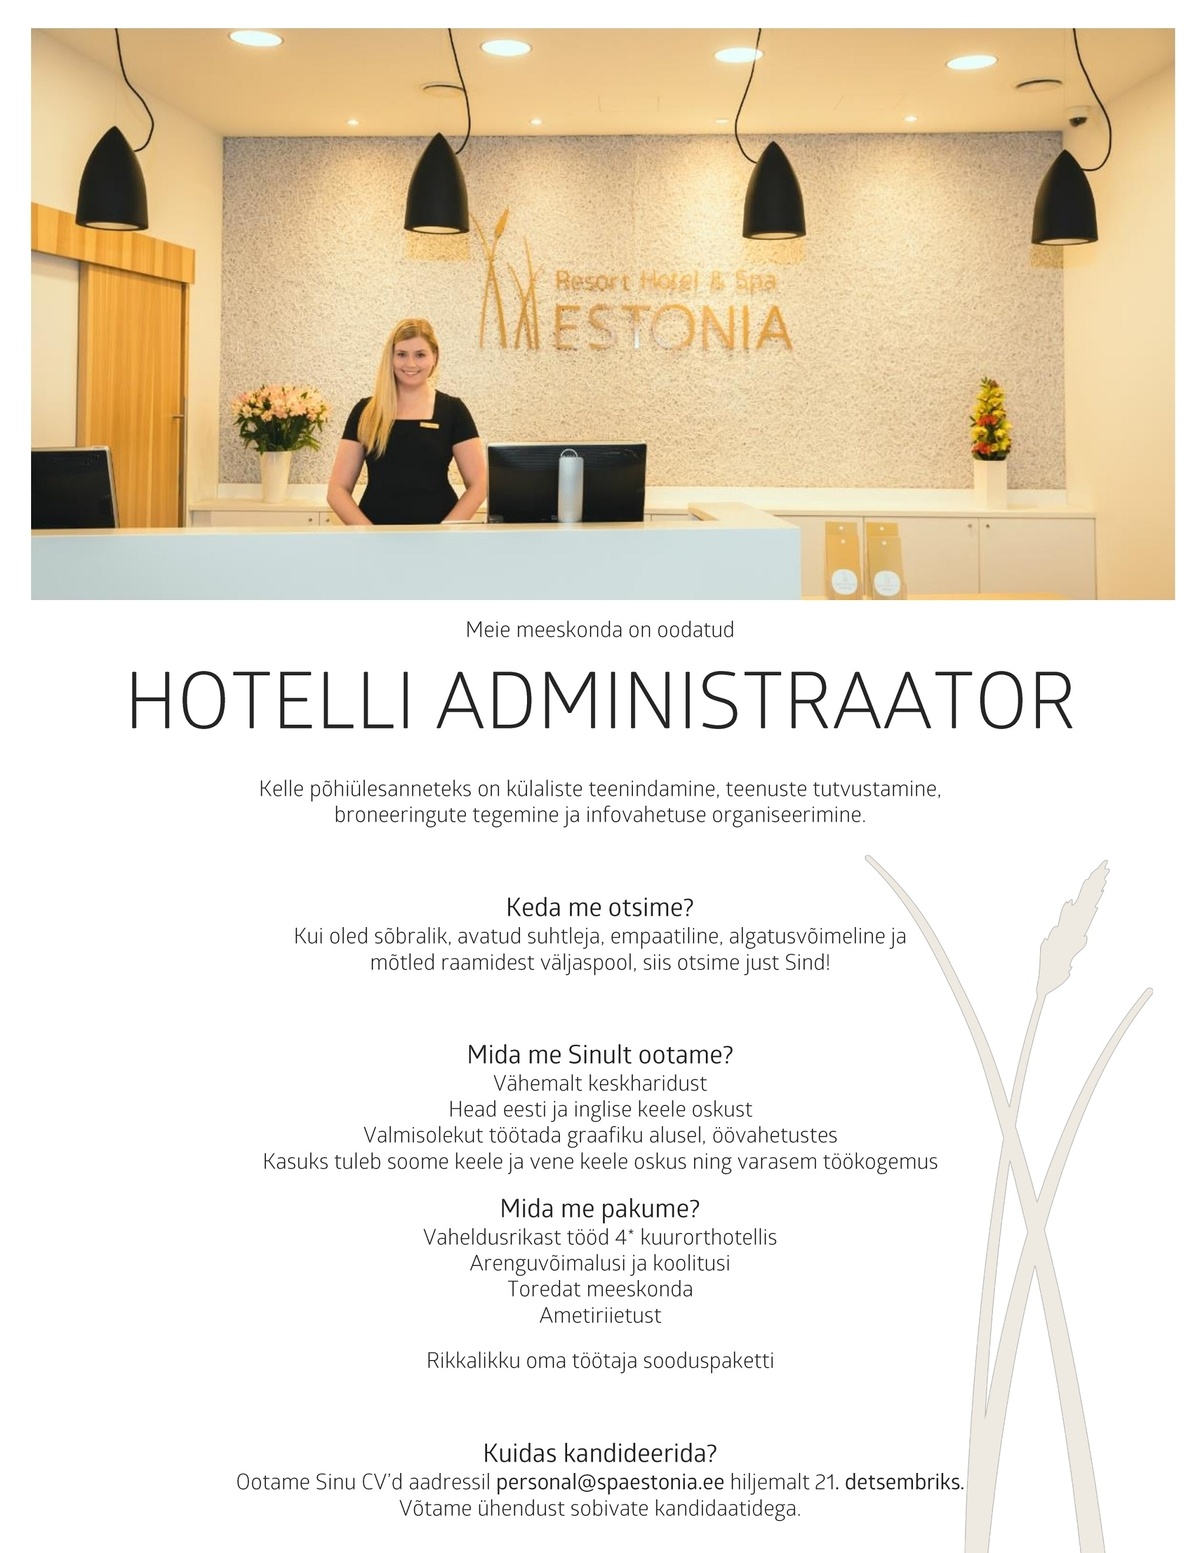 Estonia Spa Hotels AS Vastuvõtuadministraator